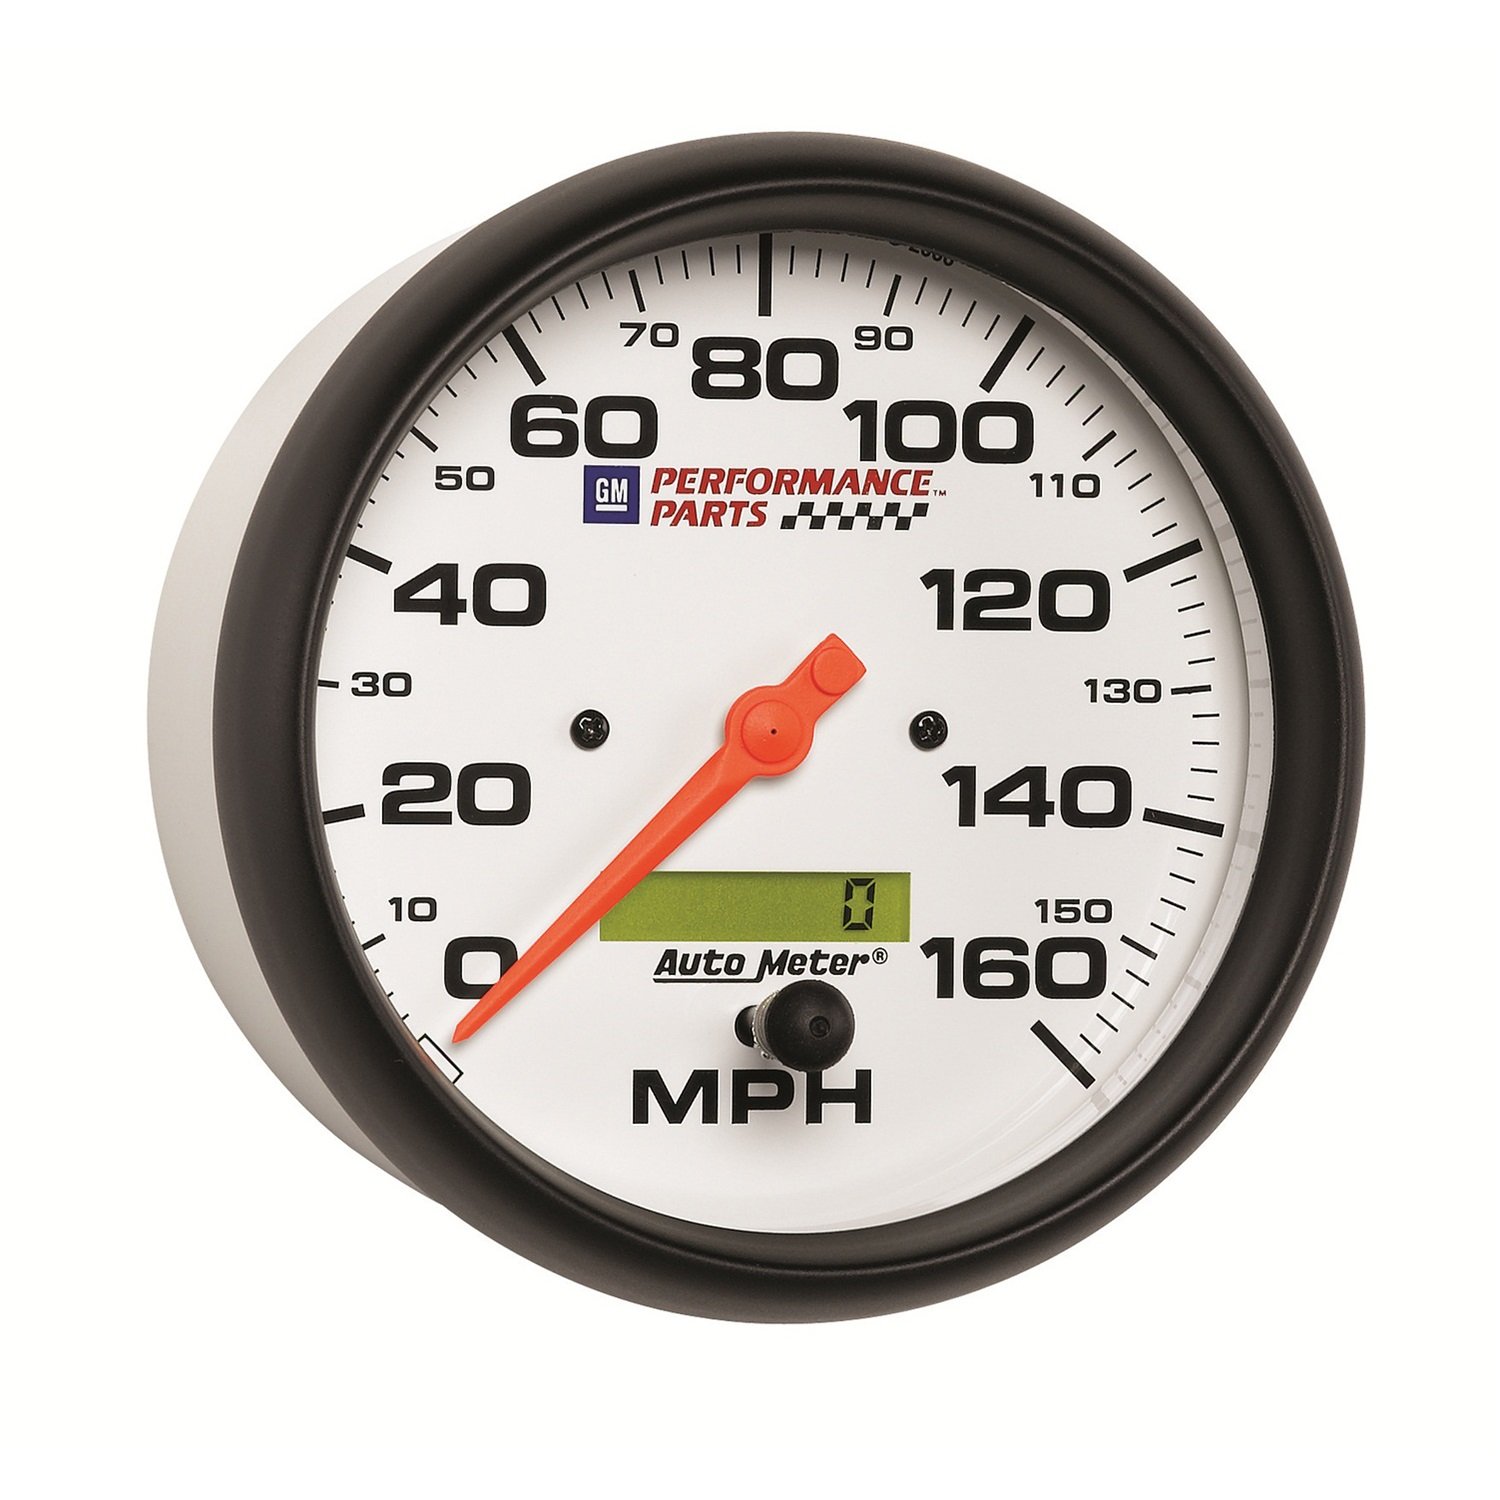 Performance meter or speedometer